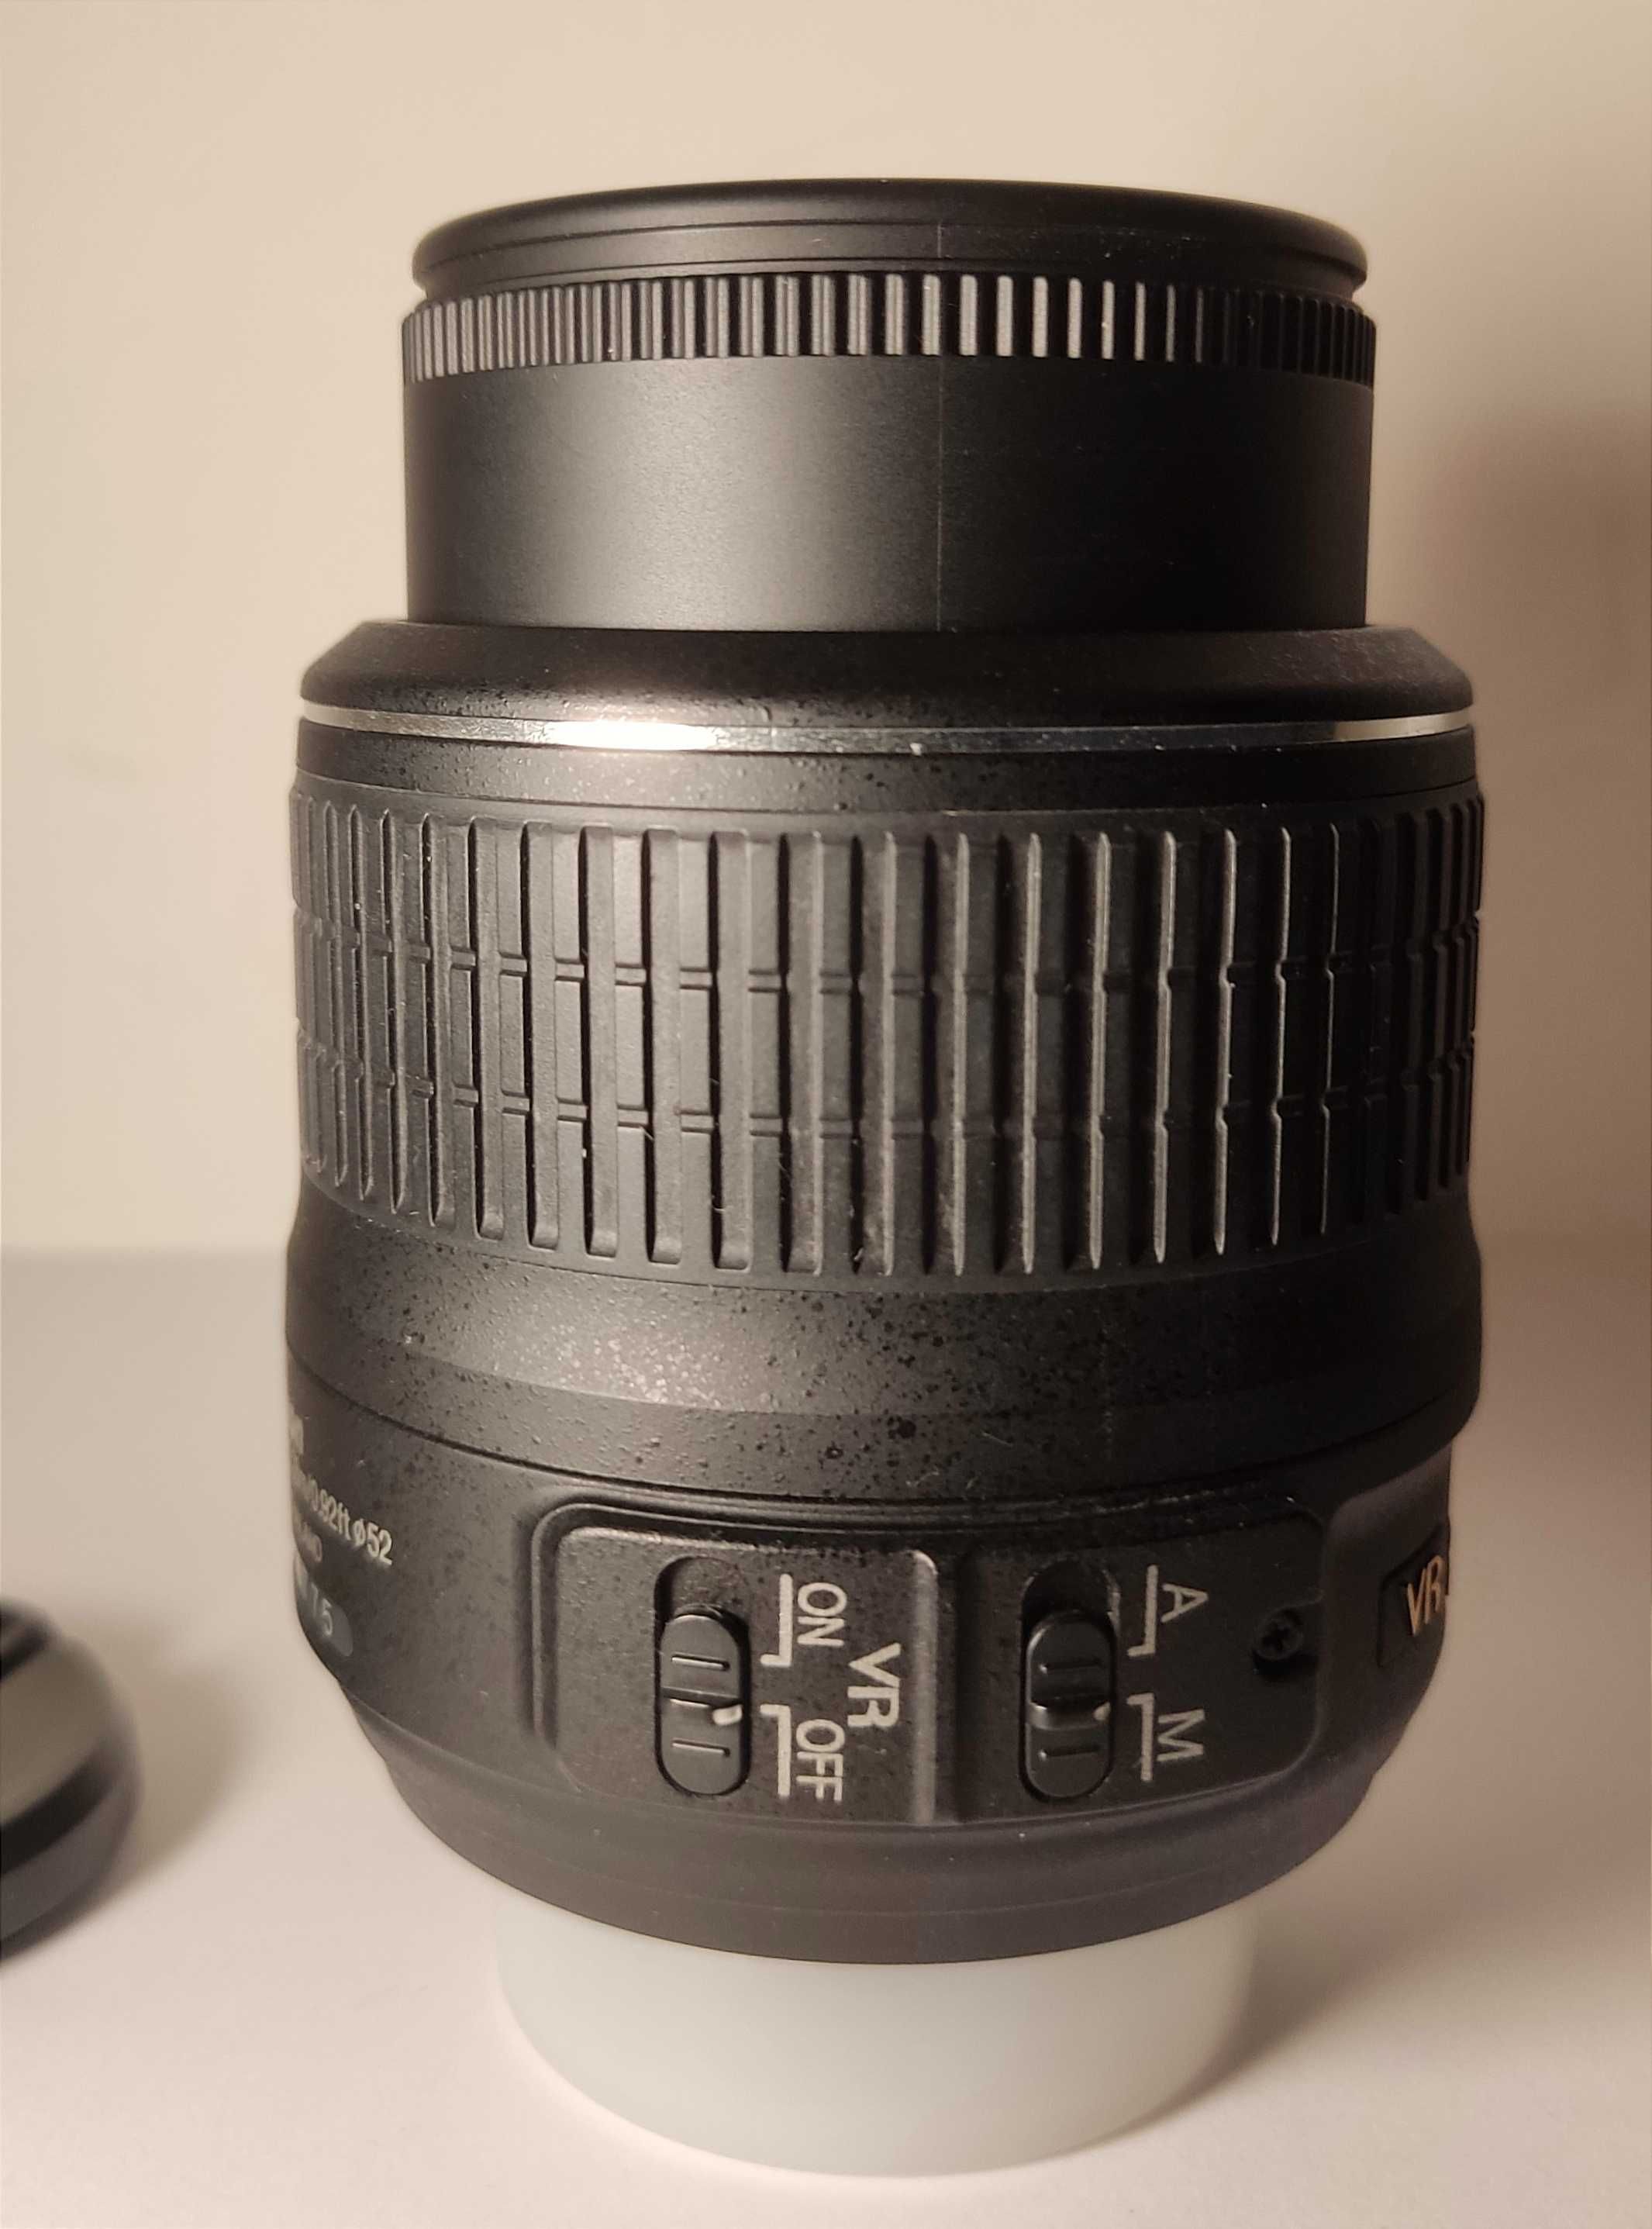 AF-S 18-55mm 3.5-5.6 G VR Nikon DX